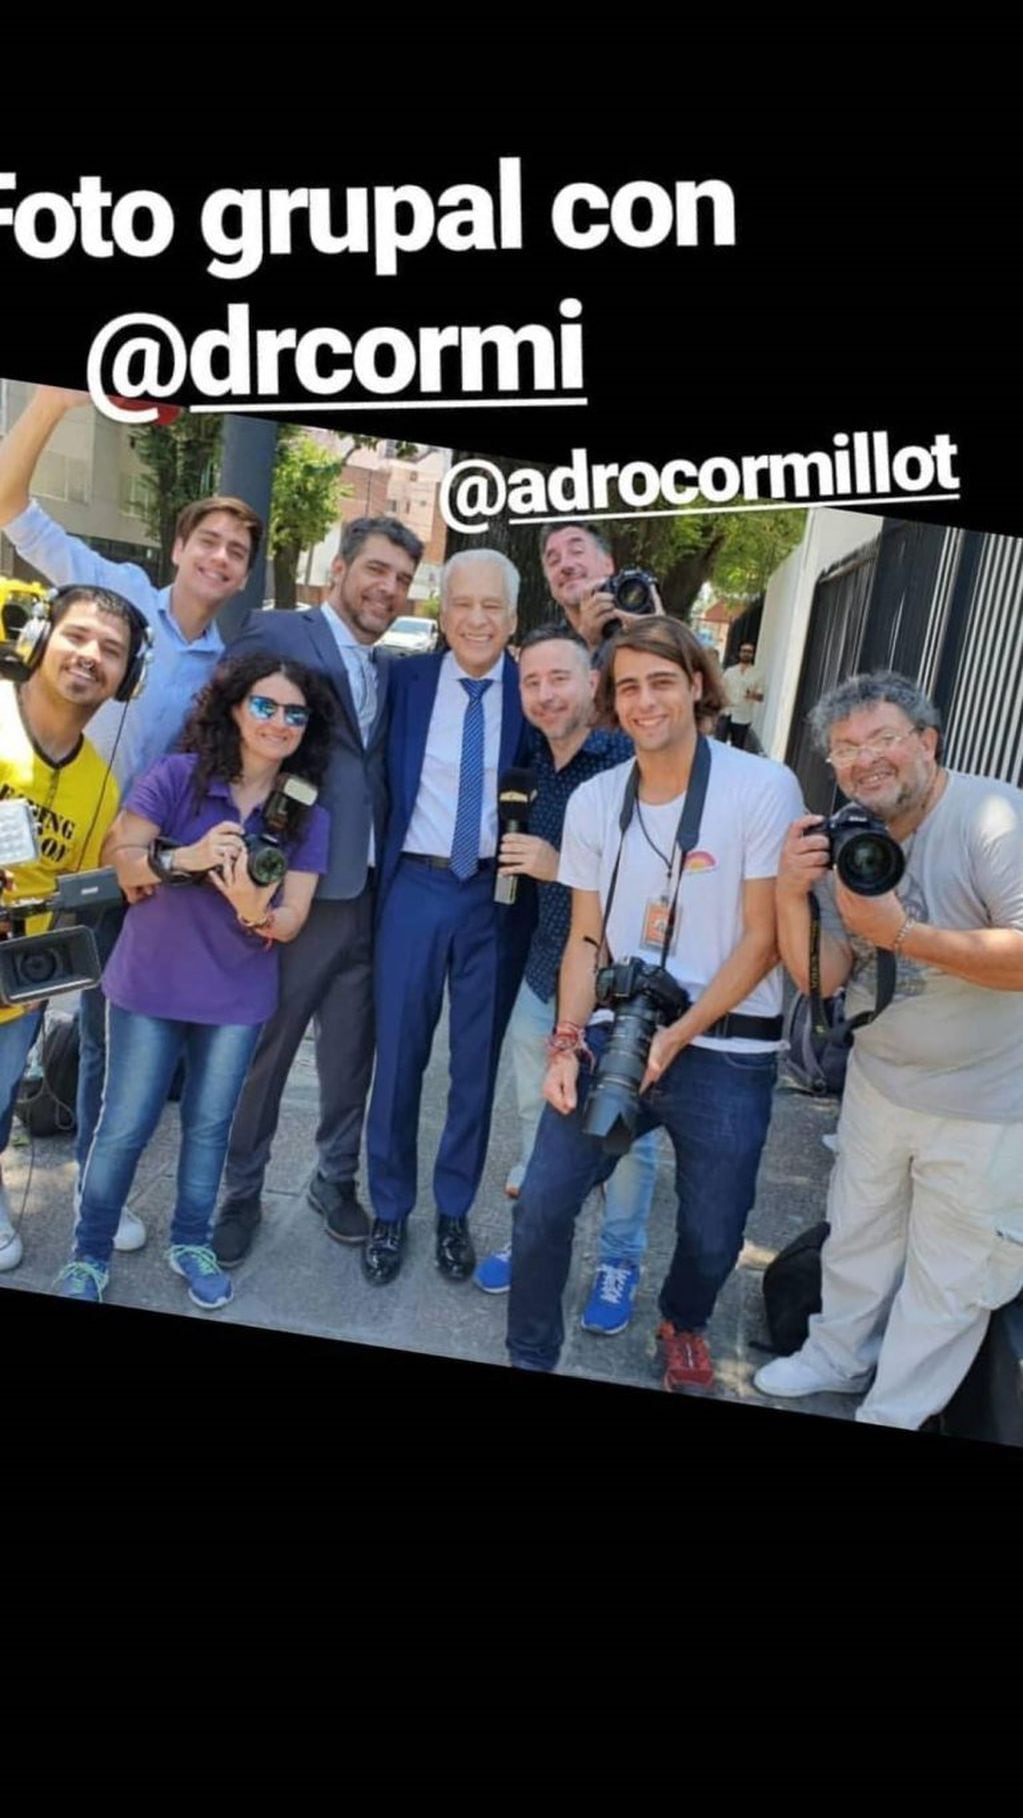 El Doctor Alberto Cormillot se tomó un momento para fotografiarse junto a la guardia periodística que lo aguardaba a la salida del salón (Fotos: Instagram/ @drcormi)